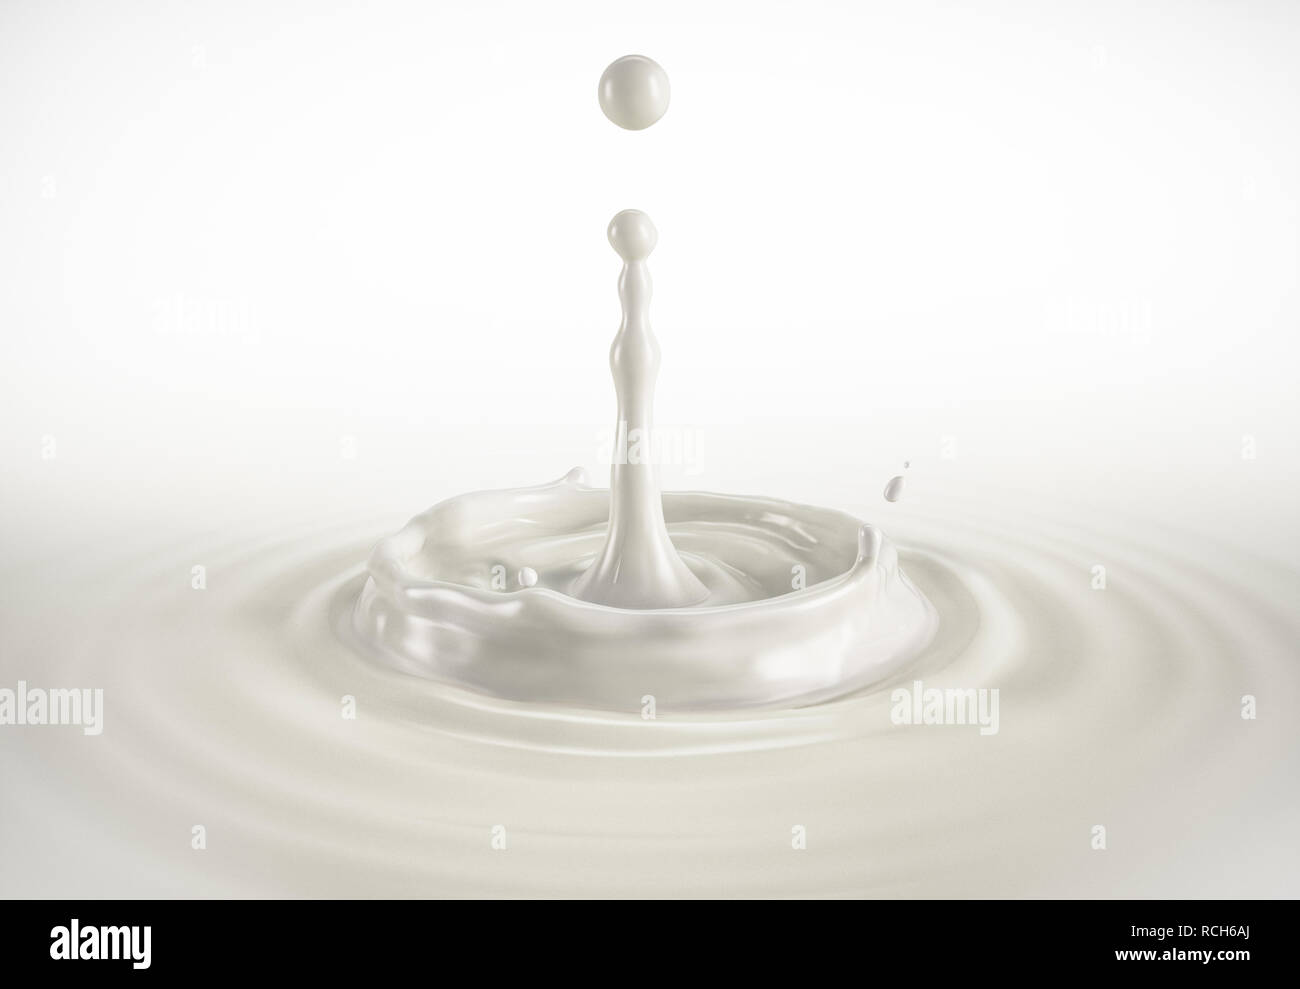 Una sola gota de leche leche chapoteando en la piscina con ondulaciones. Sobre un fondo blanco. Trazado de recorte incluido. Foto de stock